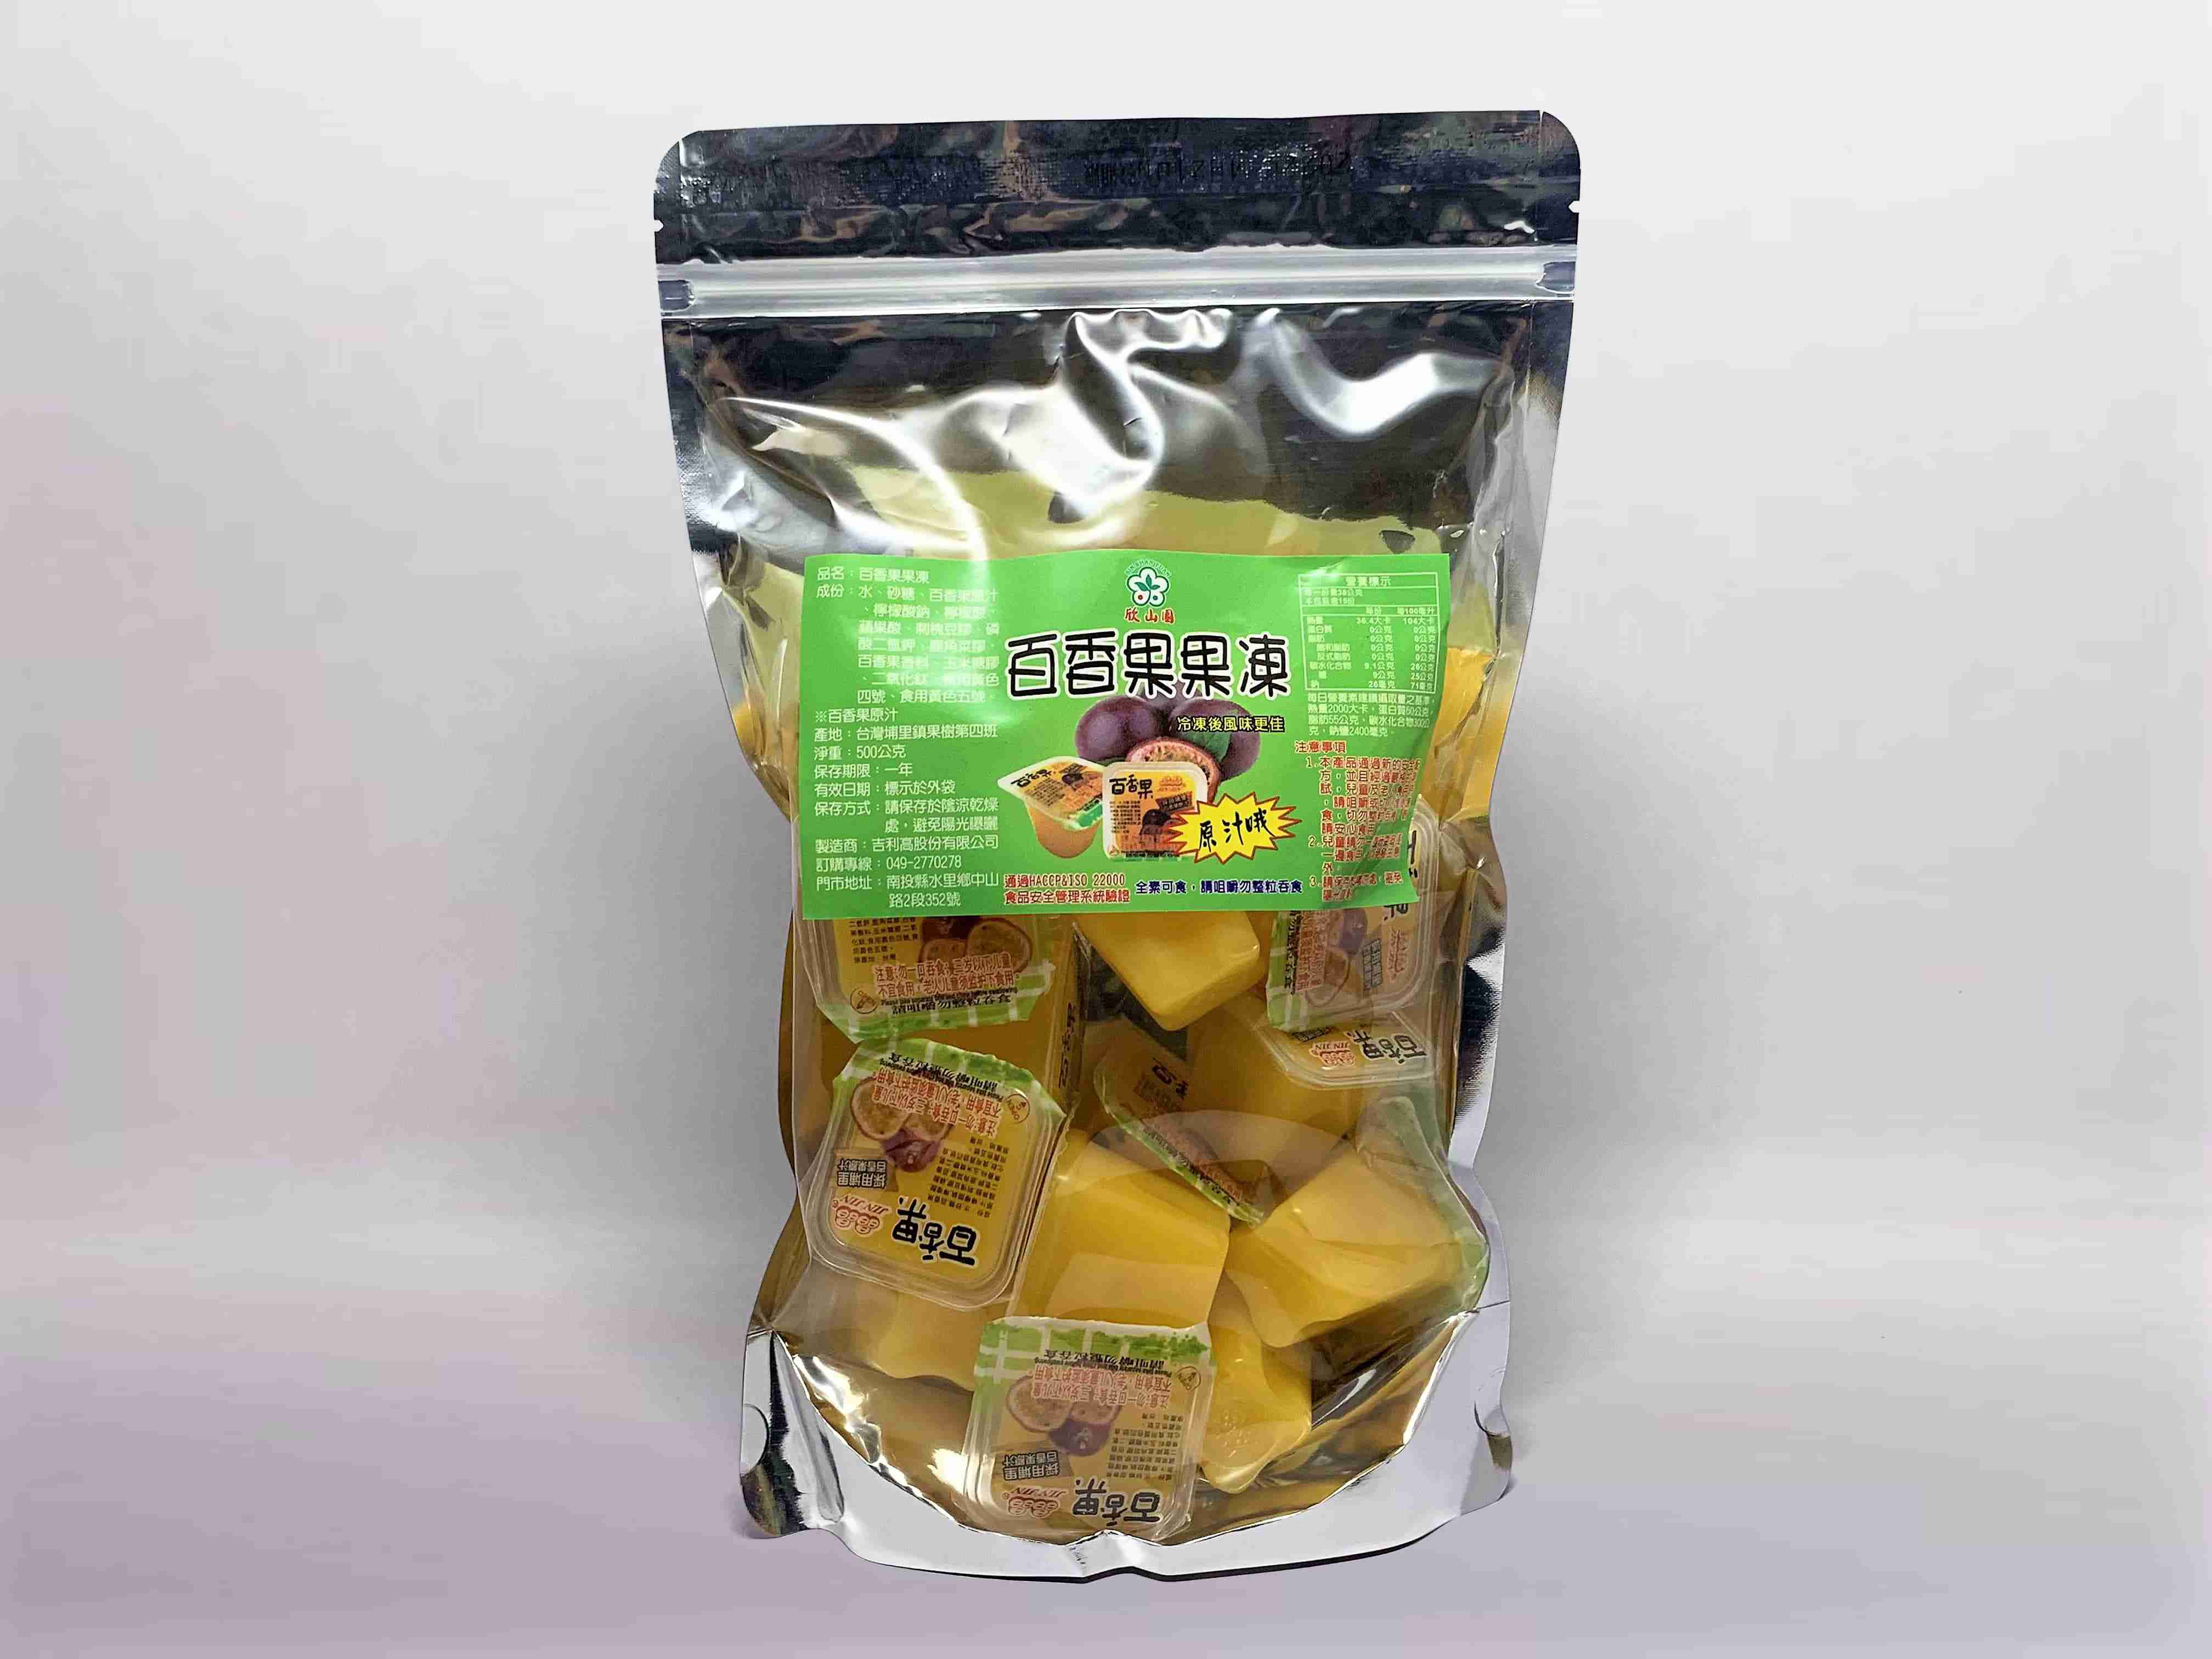 欣山園各式梅子製品:梅子禮盒、茶豆干、香蒜沙茶豆干-百香果果凍